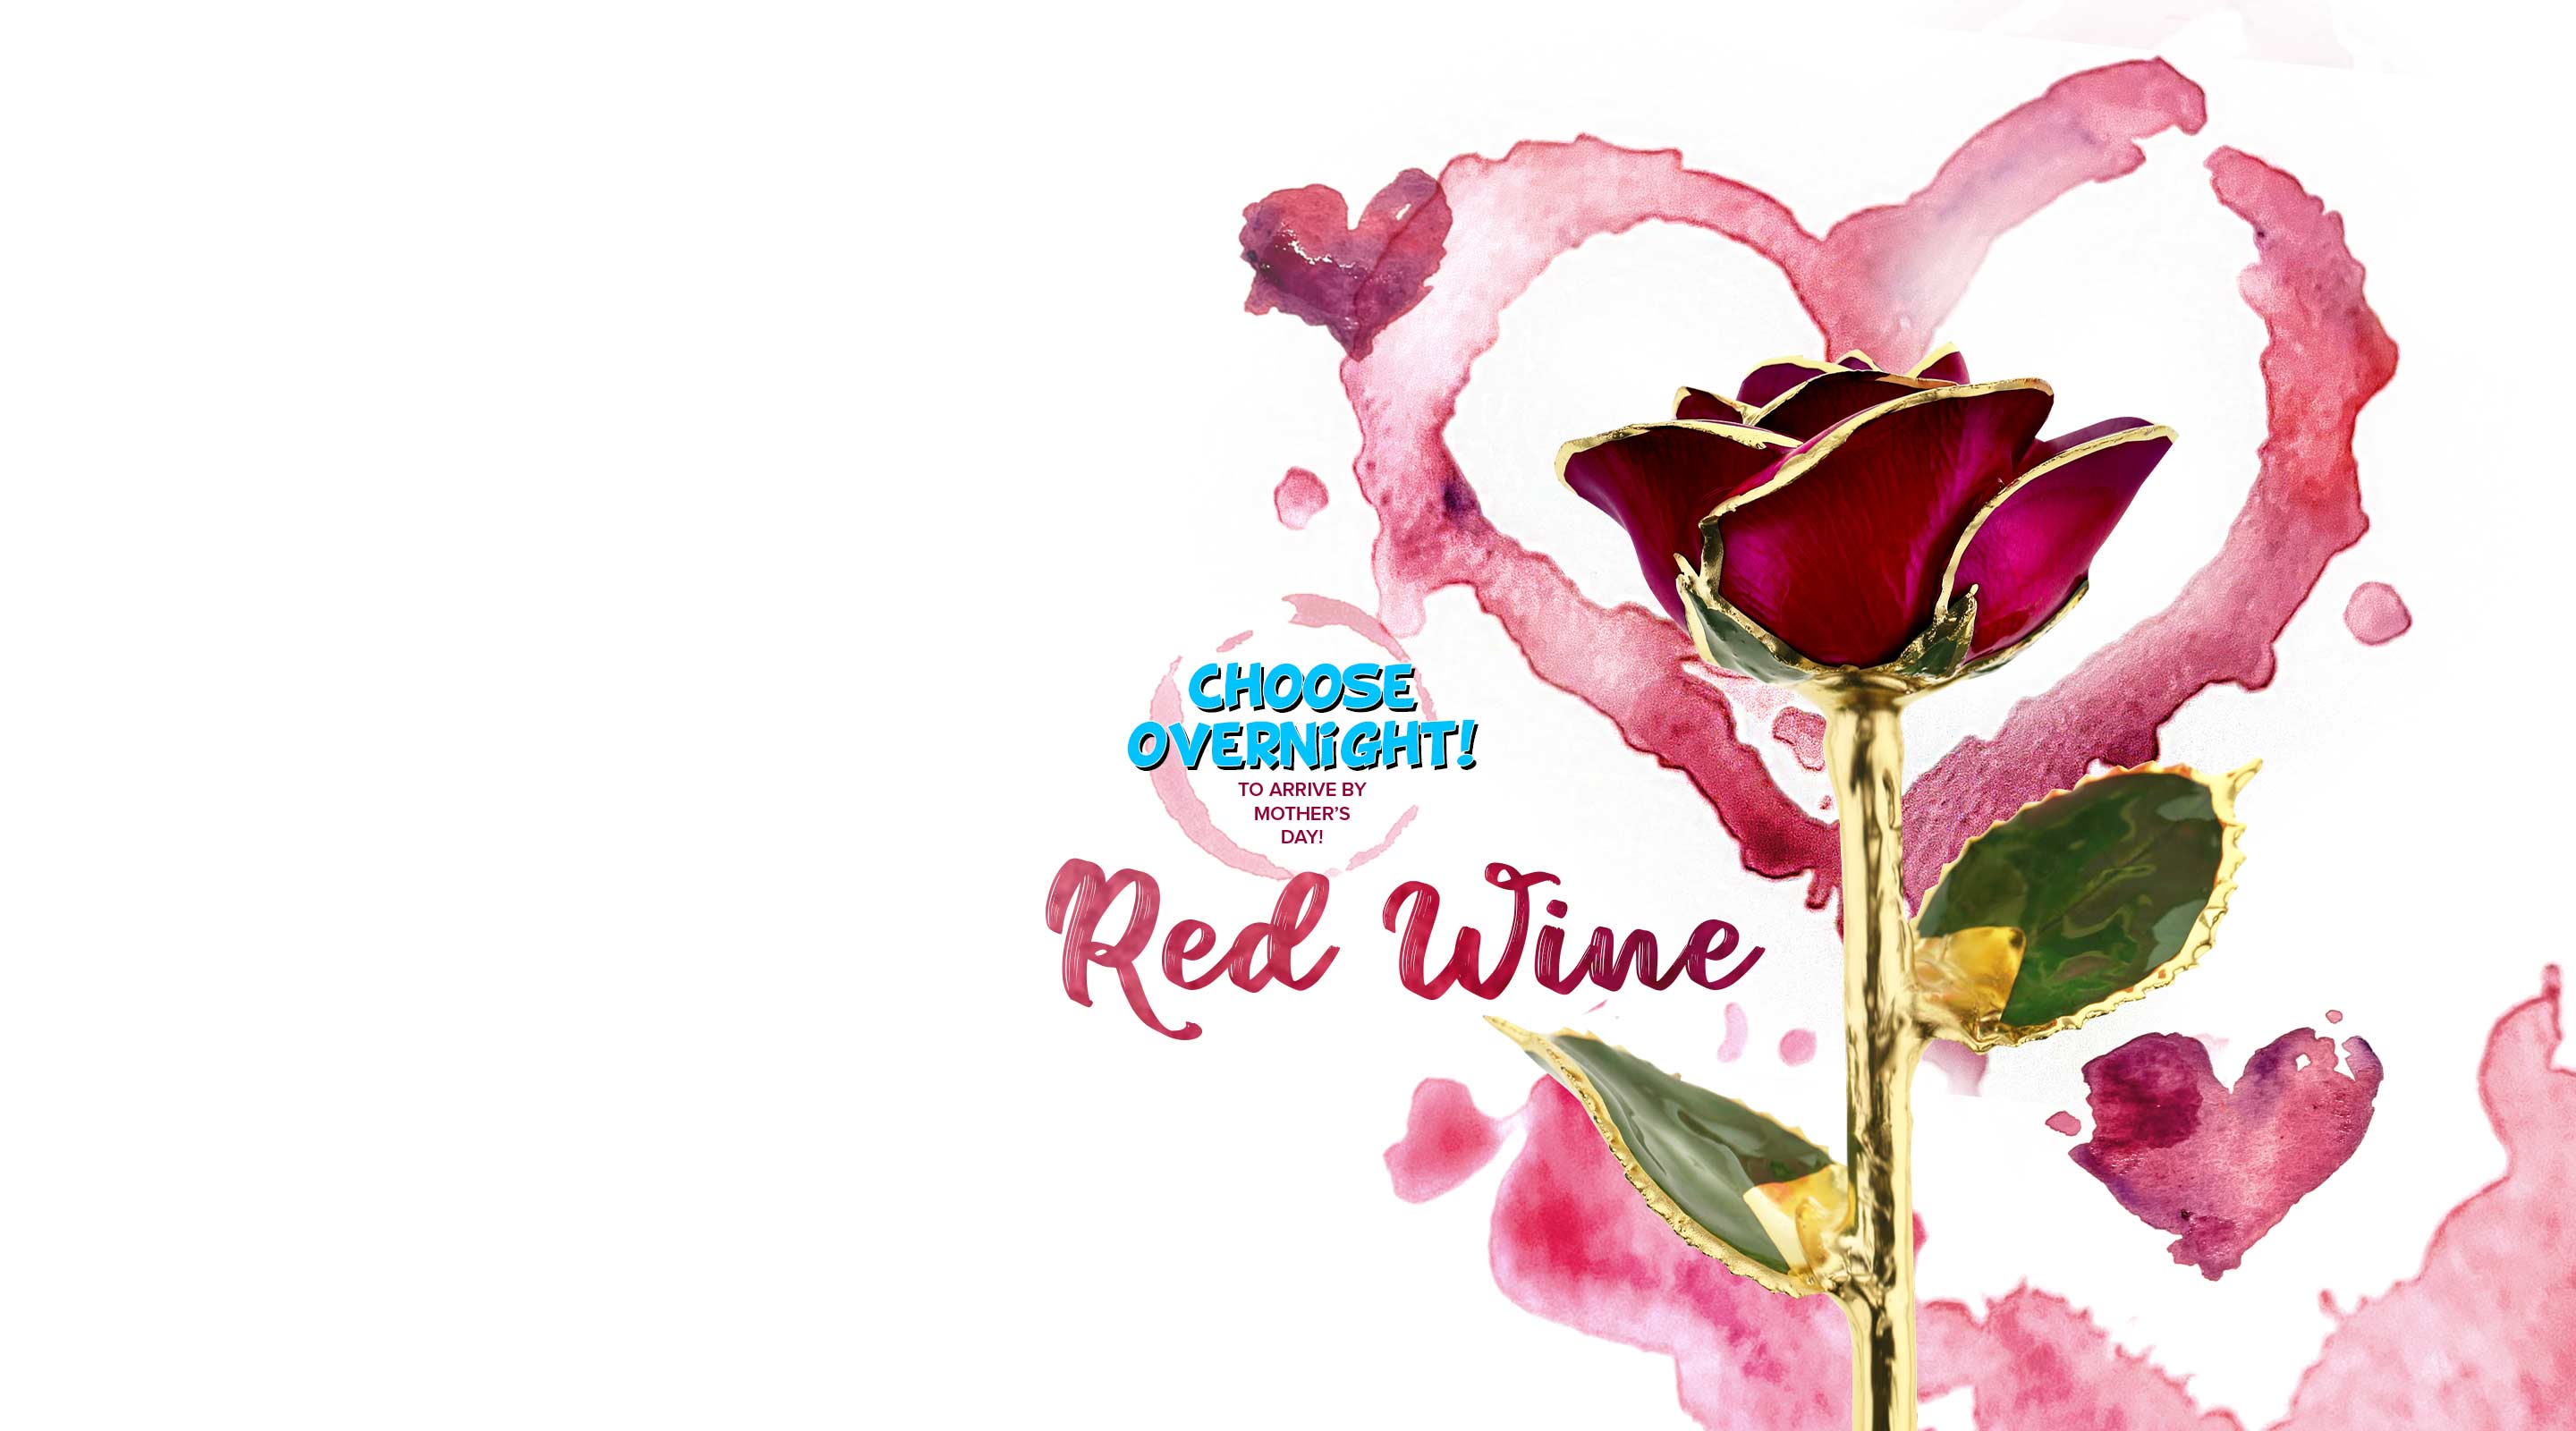 Steven Singer's brand new Red Wine 24 Karat Gold Dipped Rose.